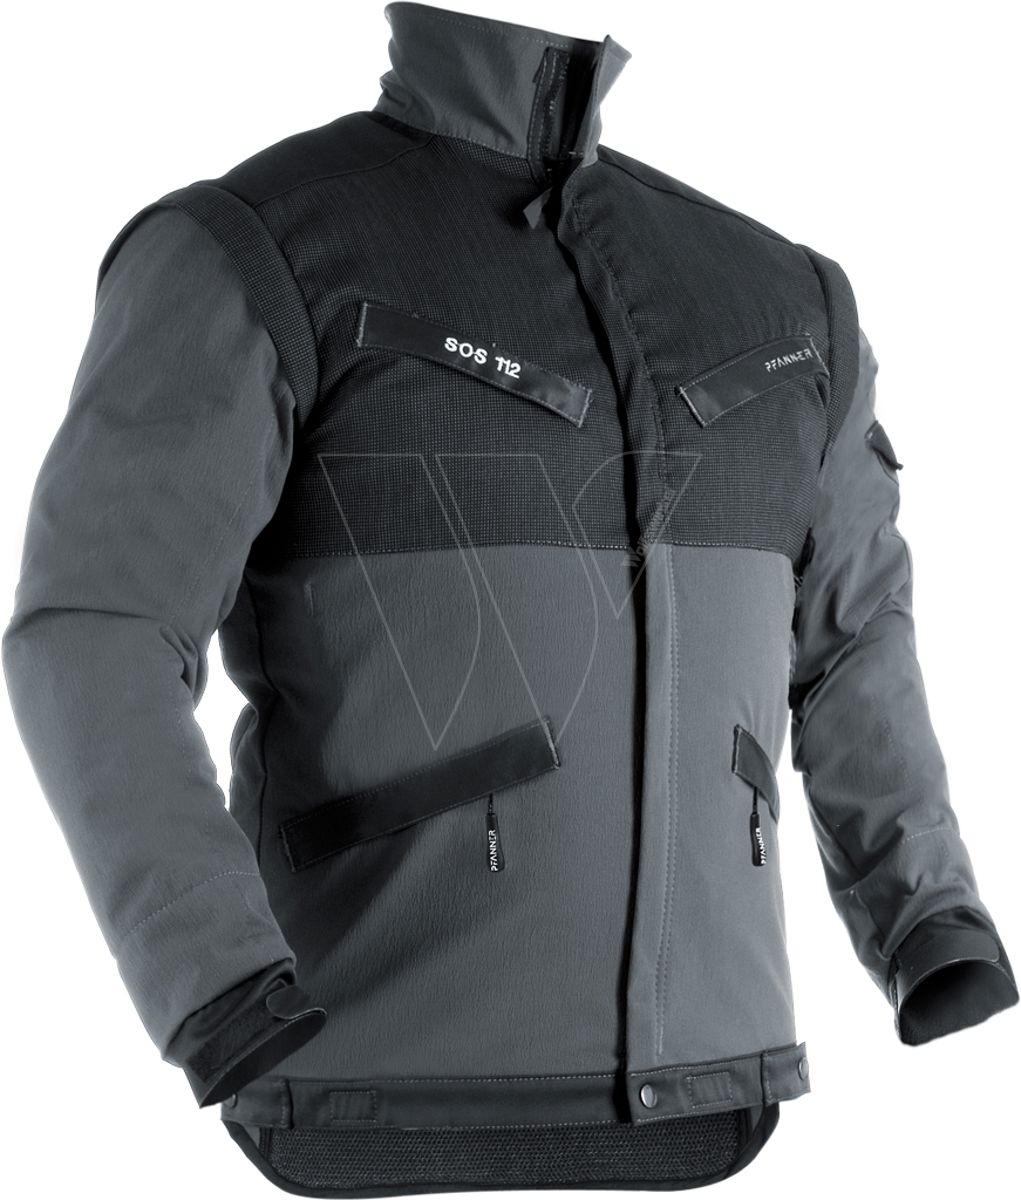 Pfanner klimaair® reflex jacket grey xl